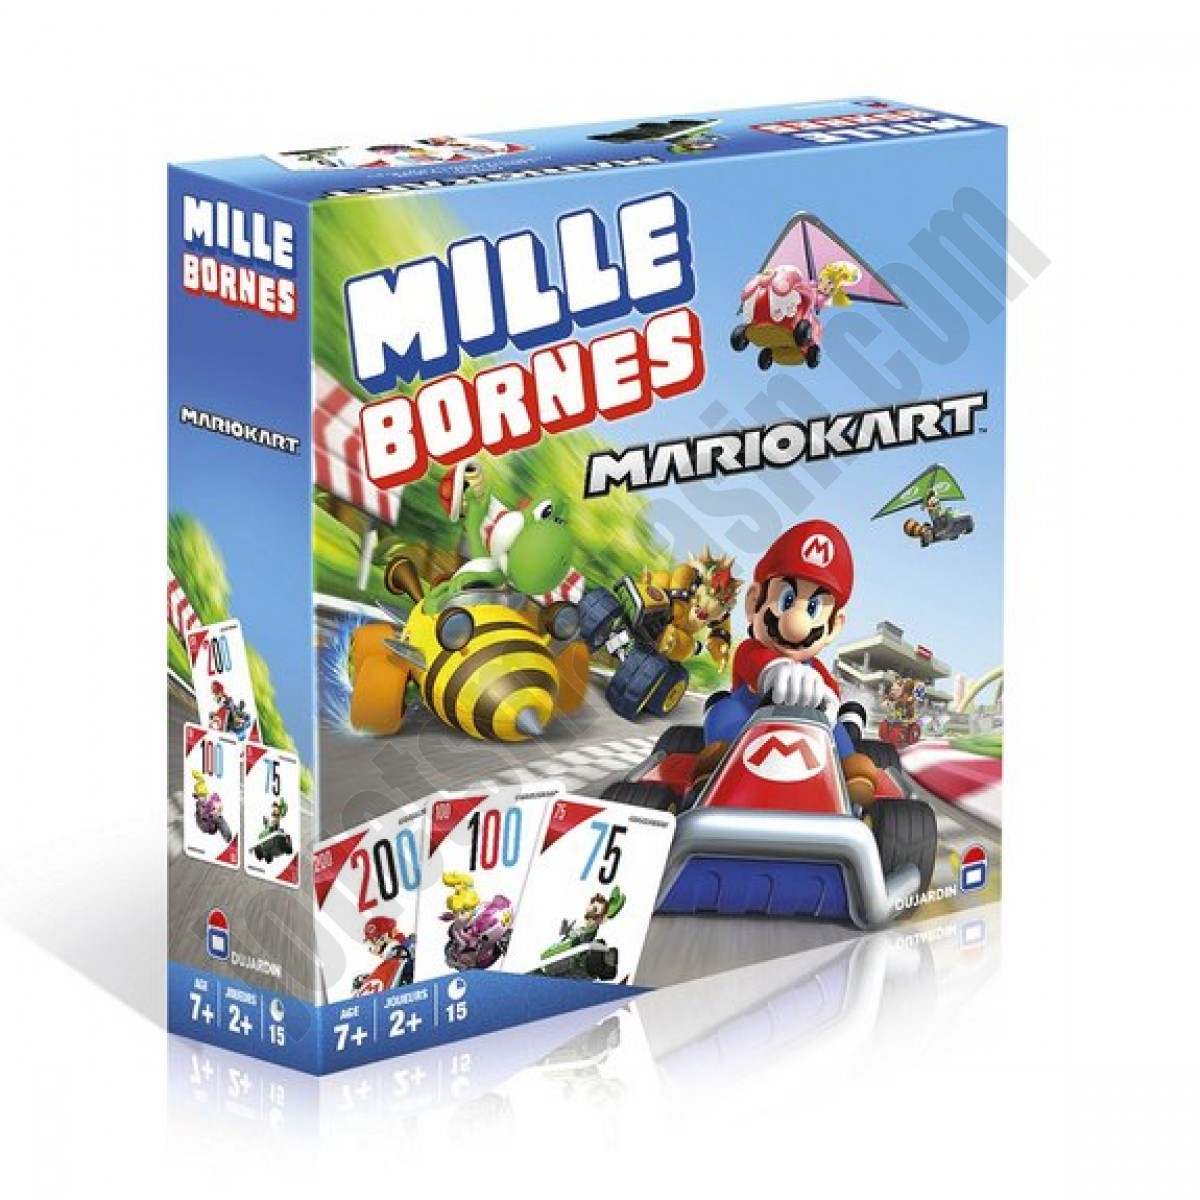 Mille bornes Mario Kart ◆◆◆ Nouveau - Mille bornes Mario Kart ◆◆◆ Nouveau